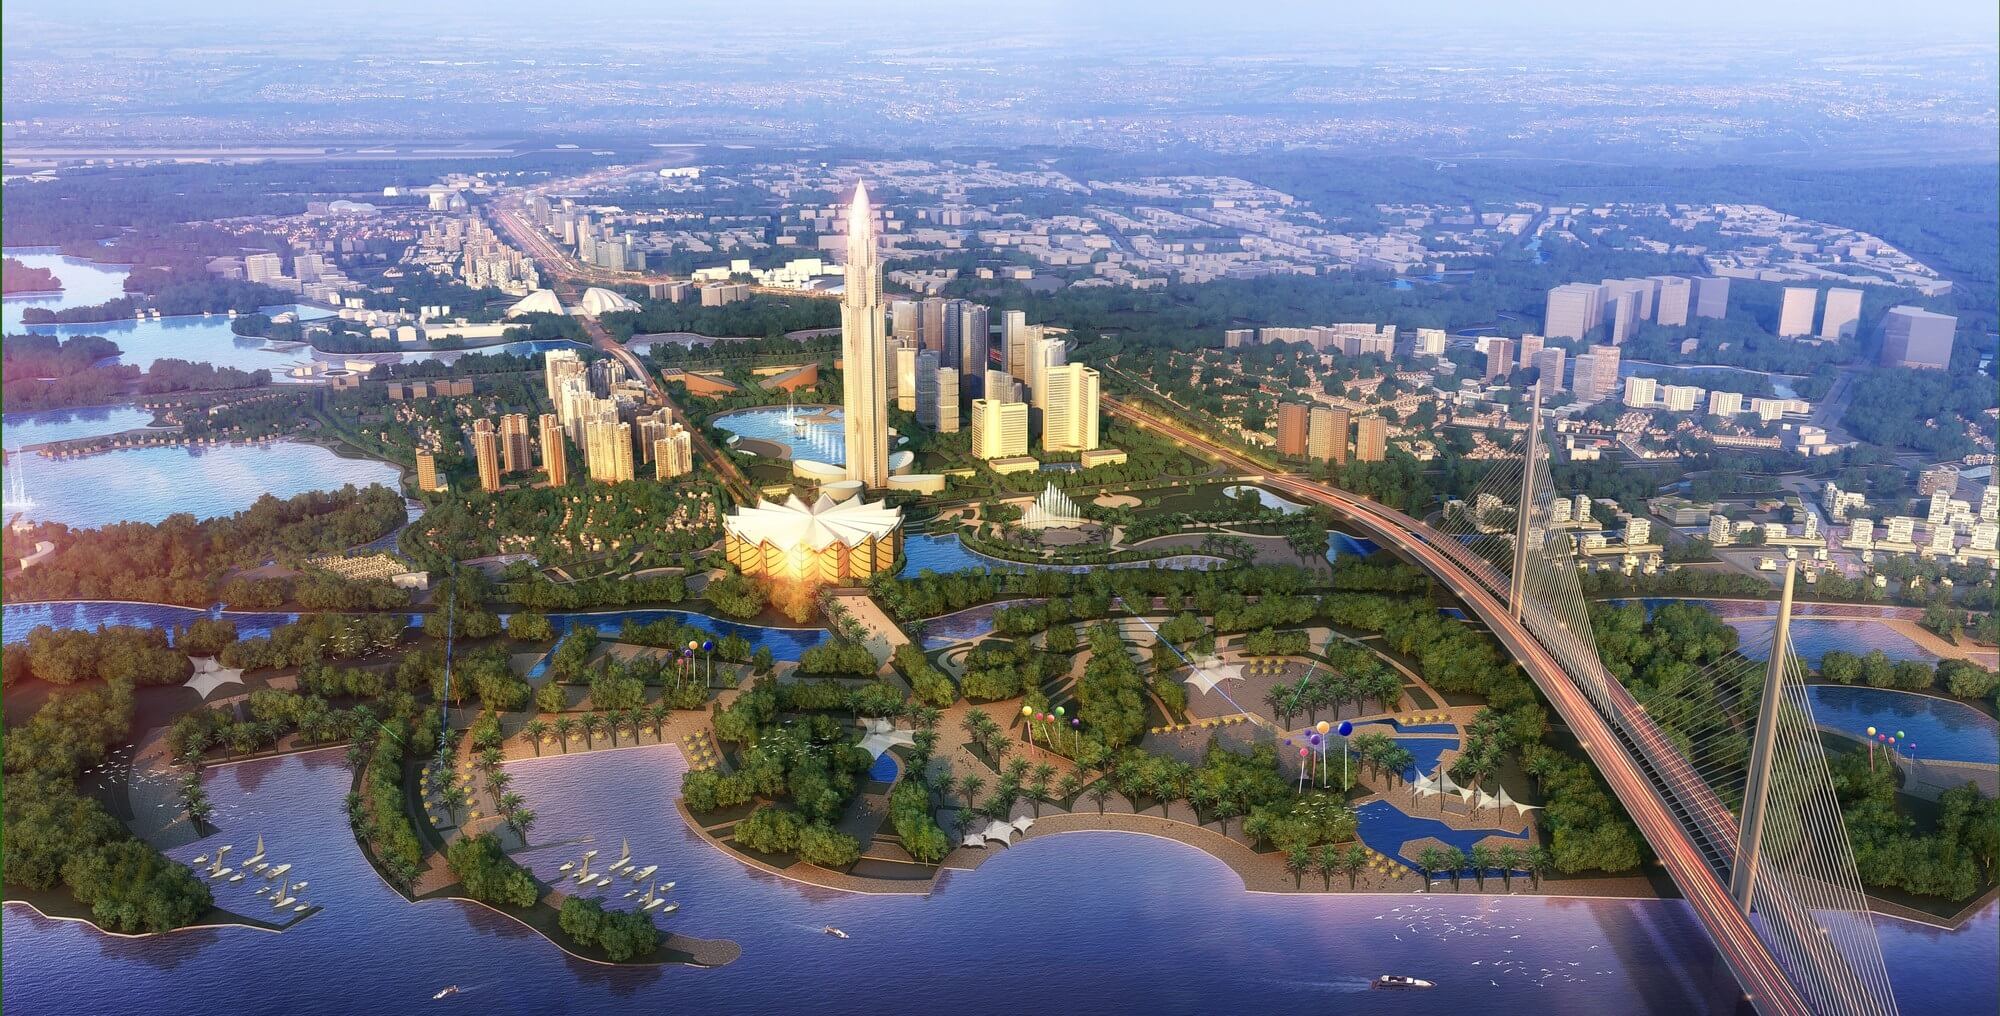 Quy hoạch 3 huyện Hà Nội lên thành phố: Kỳ vọng thành phố xanh, thông minh và hiện đại - Ảnh 4.